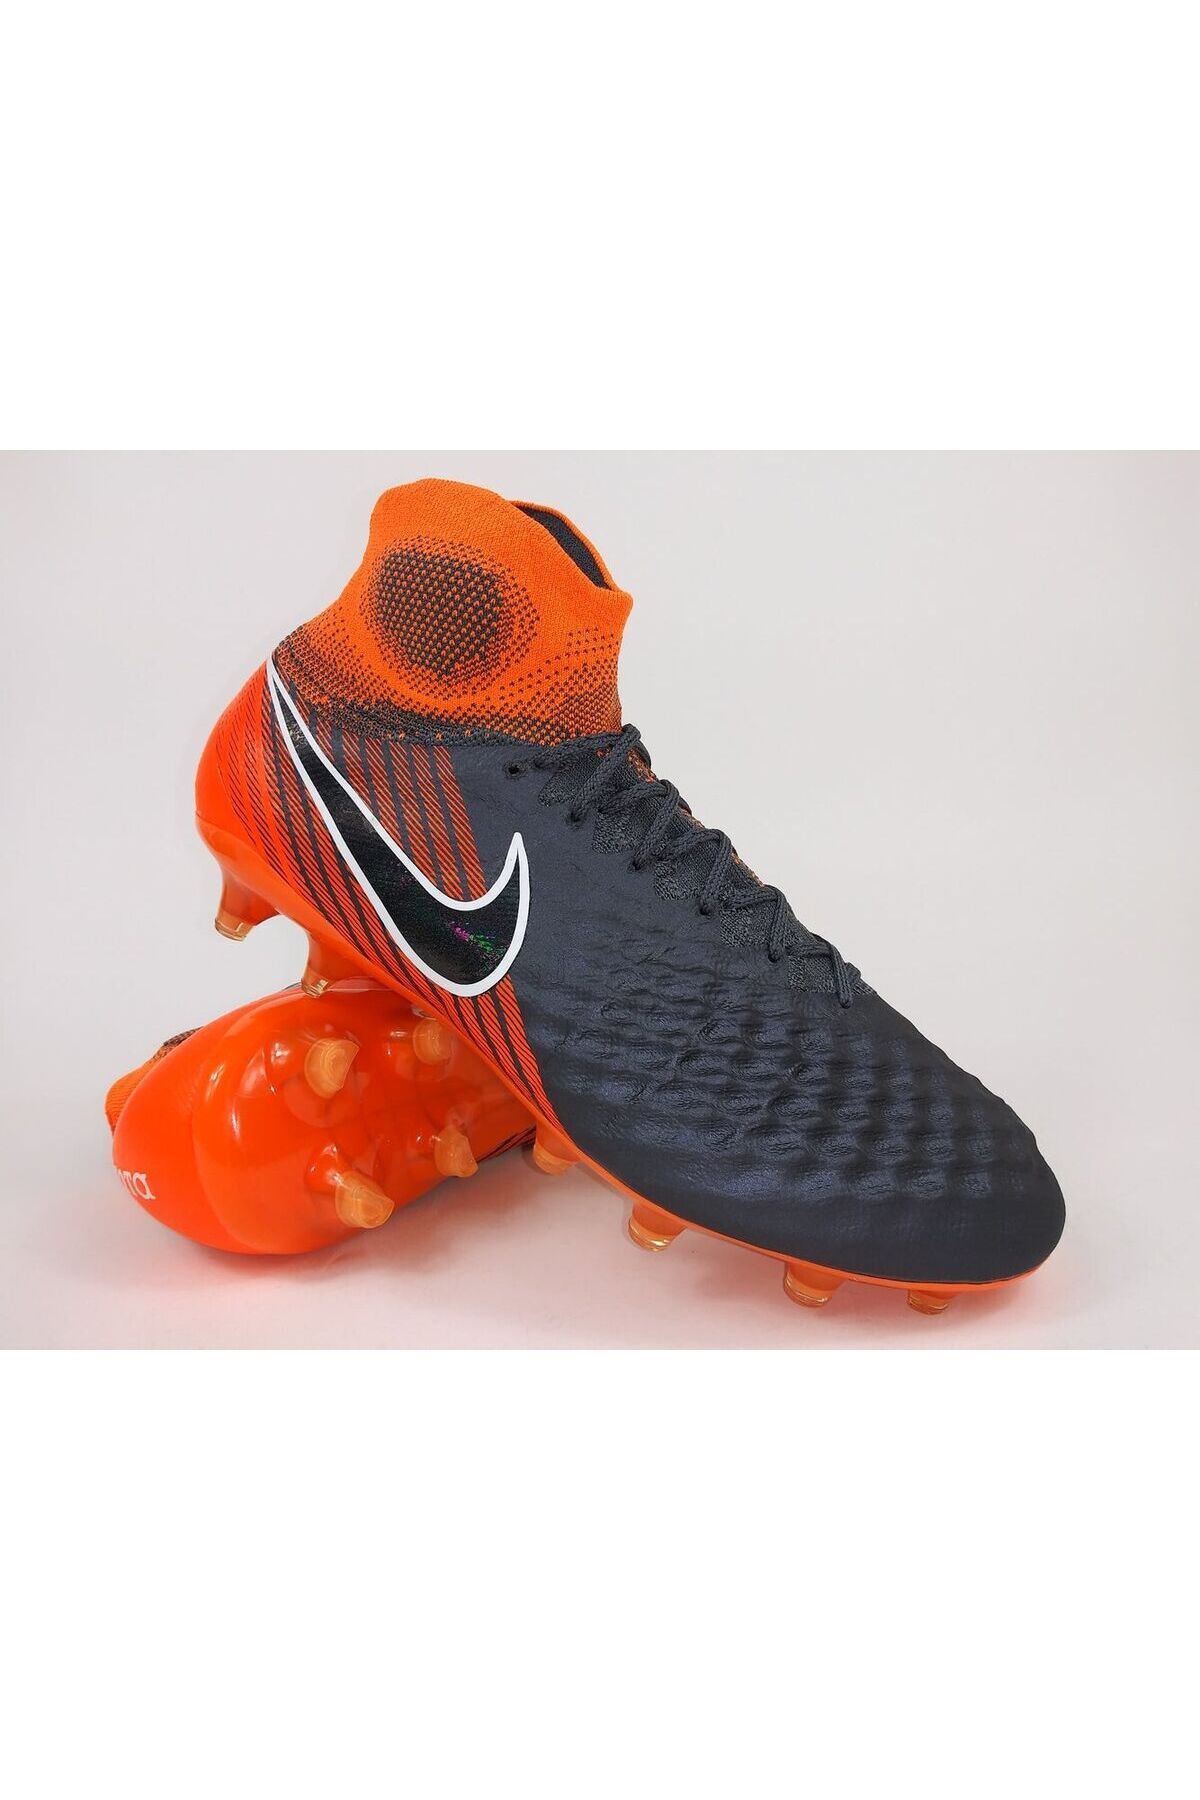 Nike Magista OBRA II Elite FG Gray Orange AH7301-080